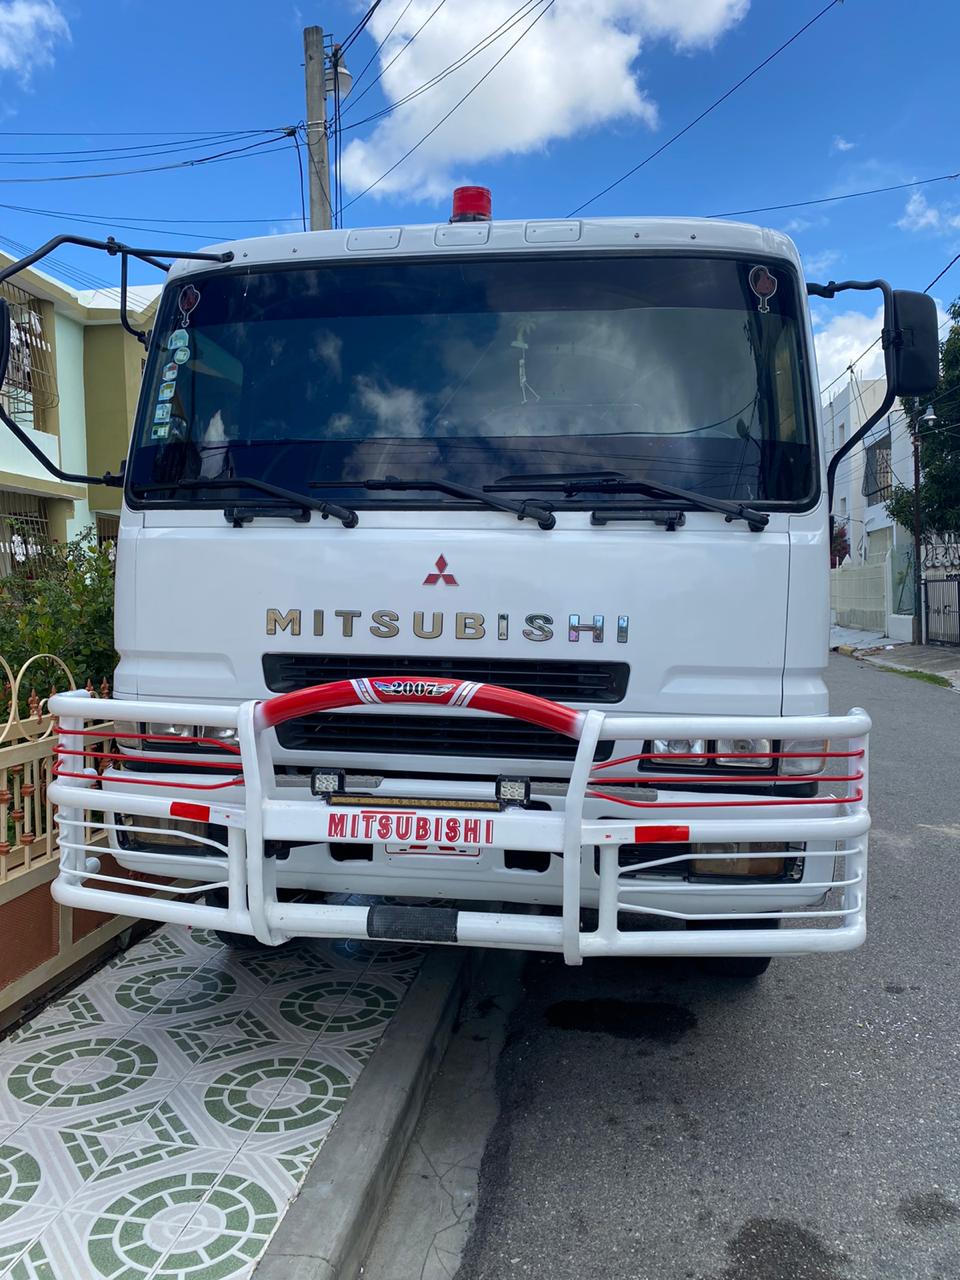 camiones y vehiculos pesados - Camion Mitsubishi